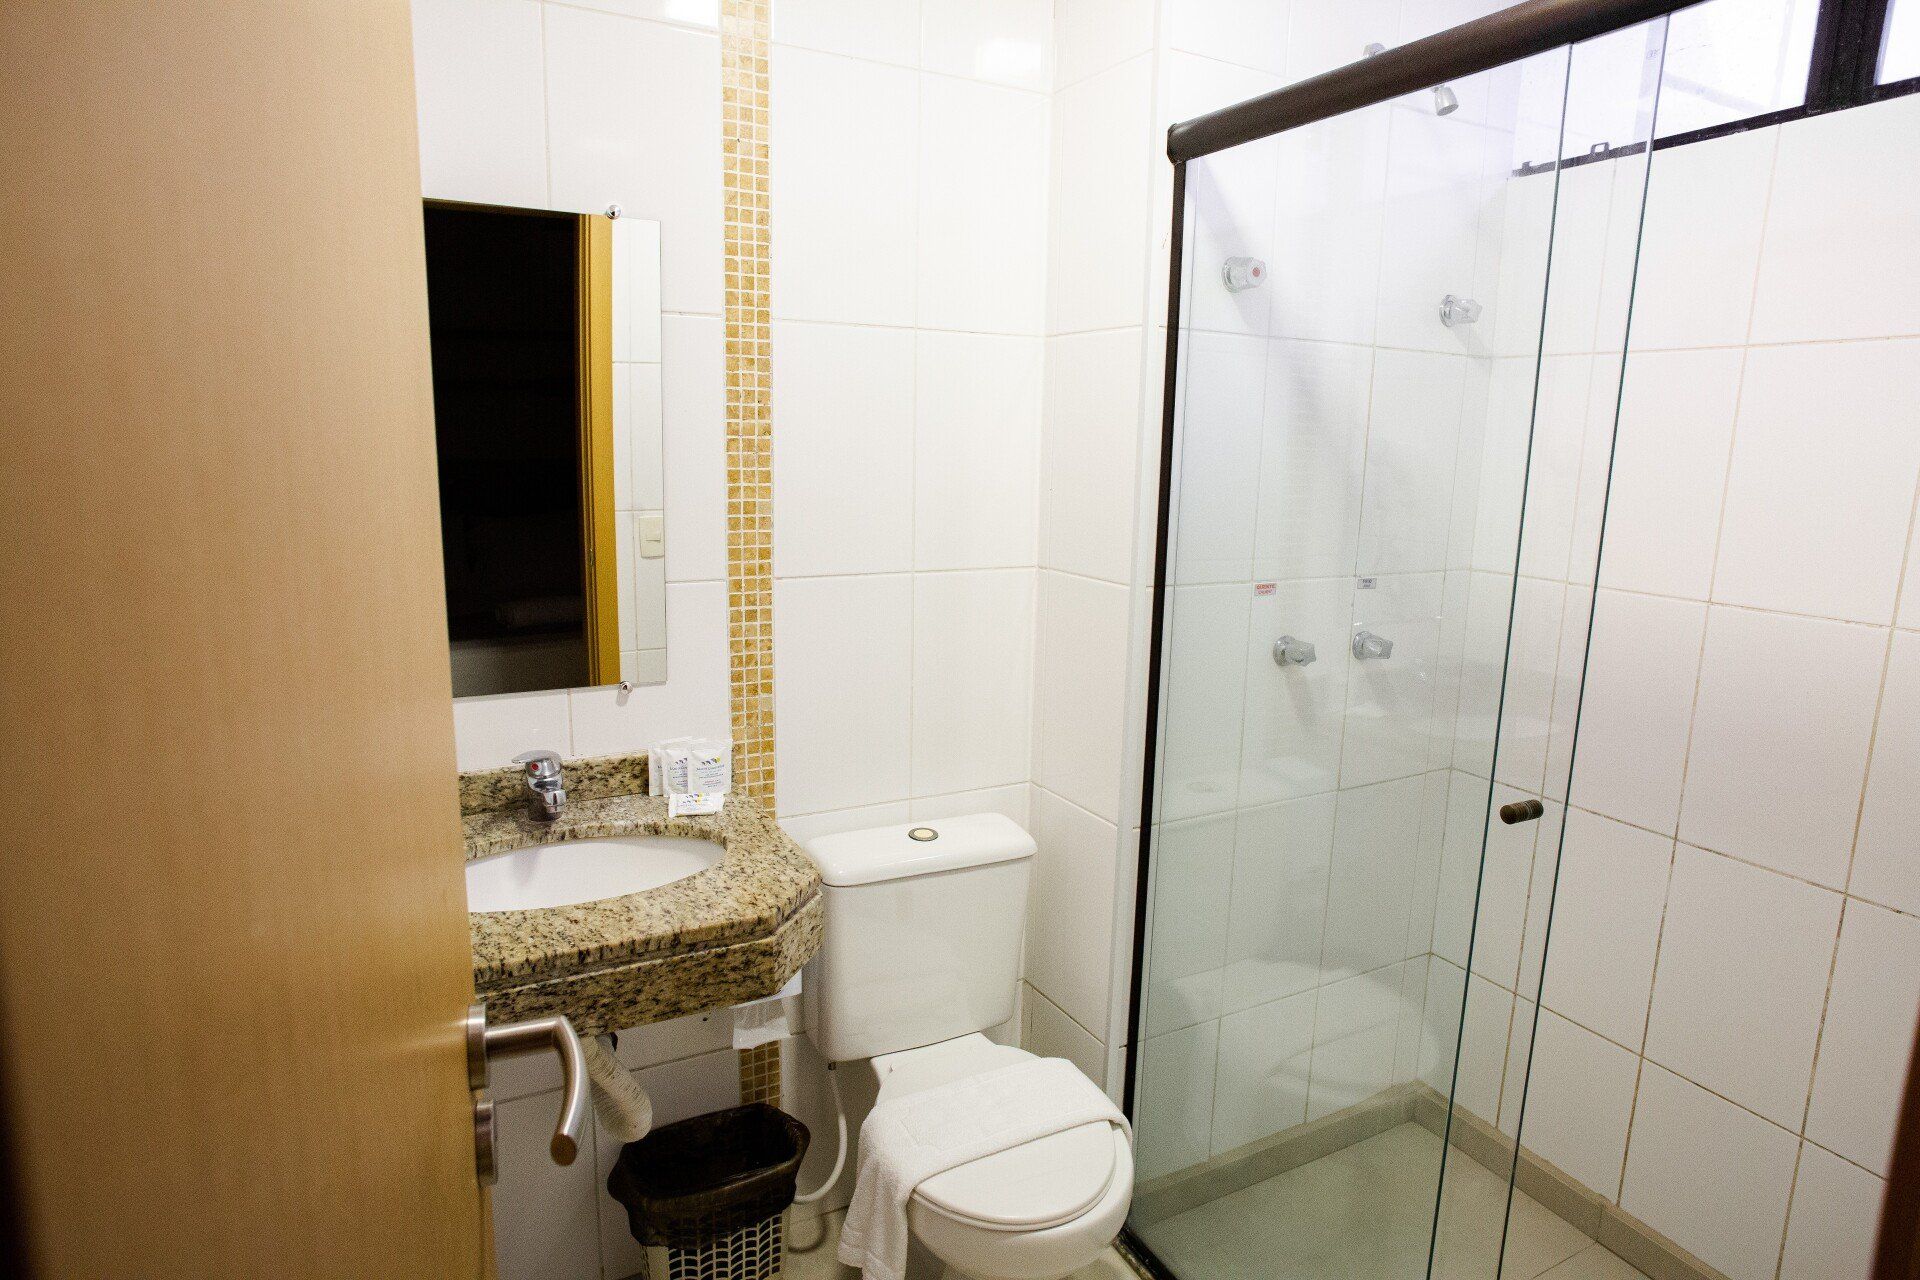 Um banheiro com vaso sanitário, pia e chuveiro.